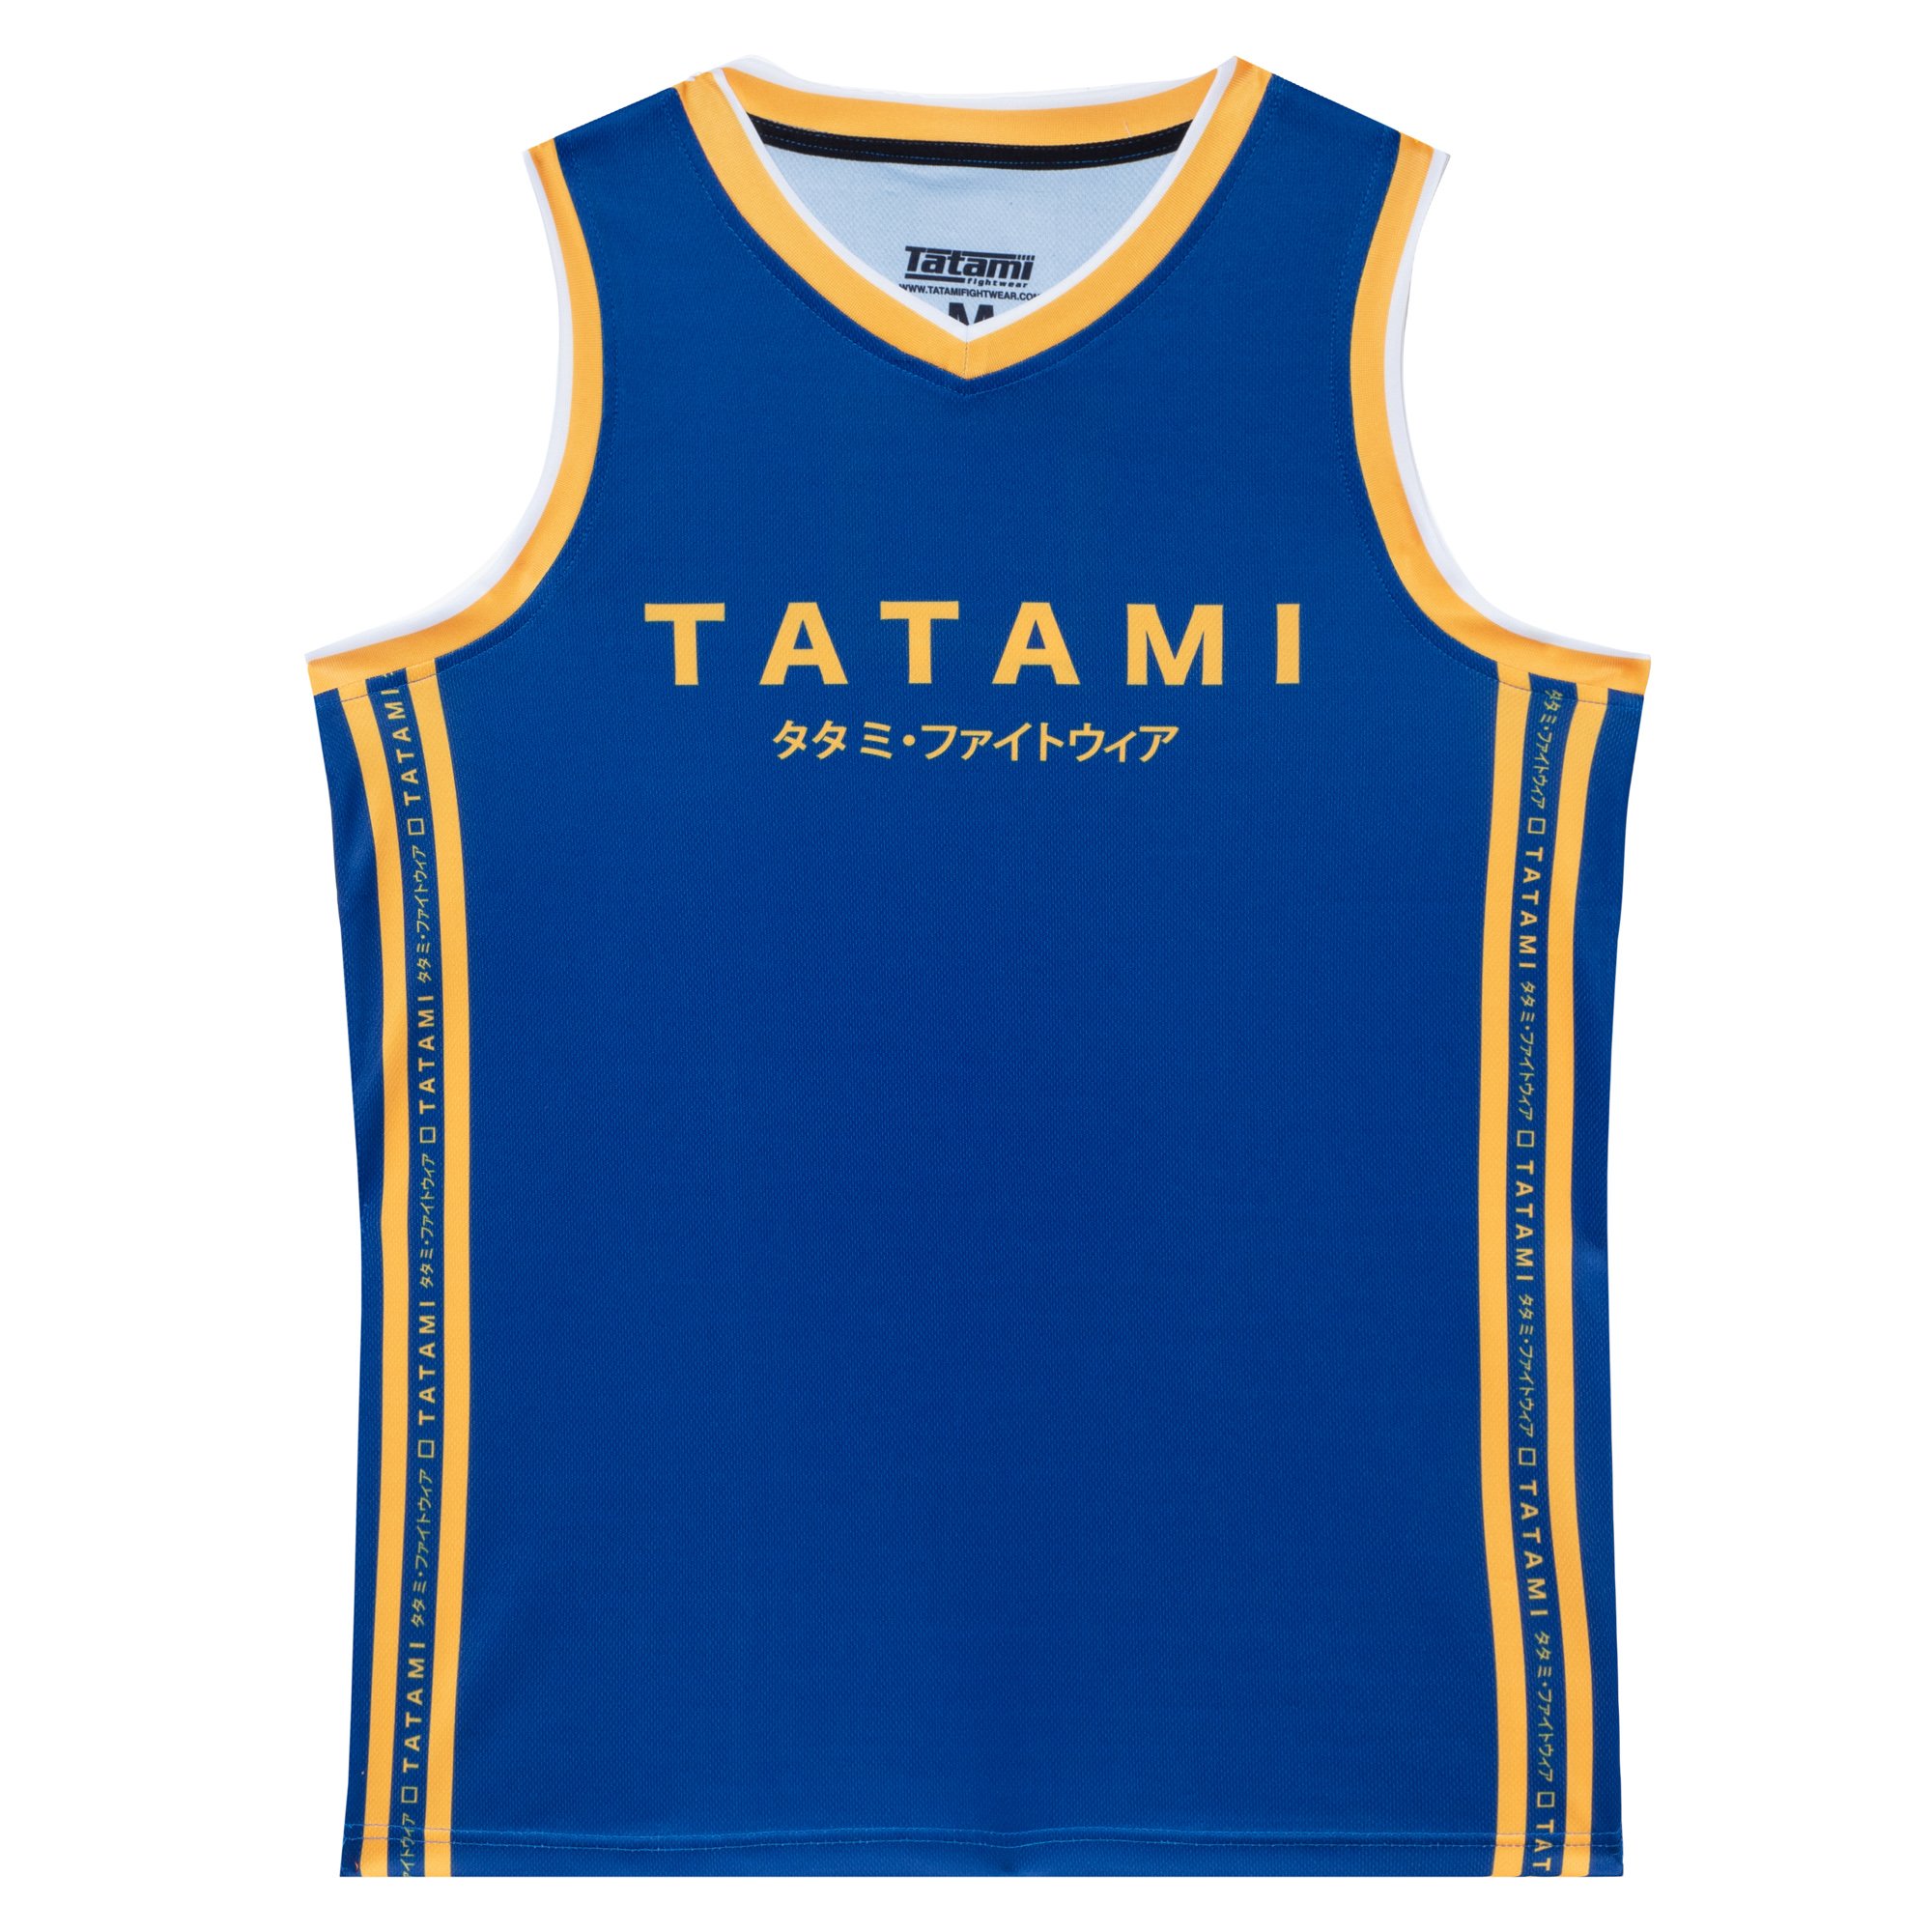 tatami-debardeur-katakana-bleu